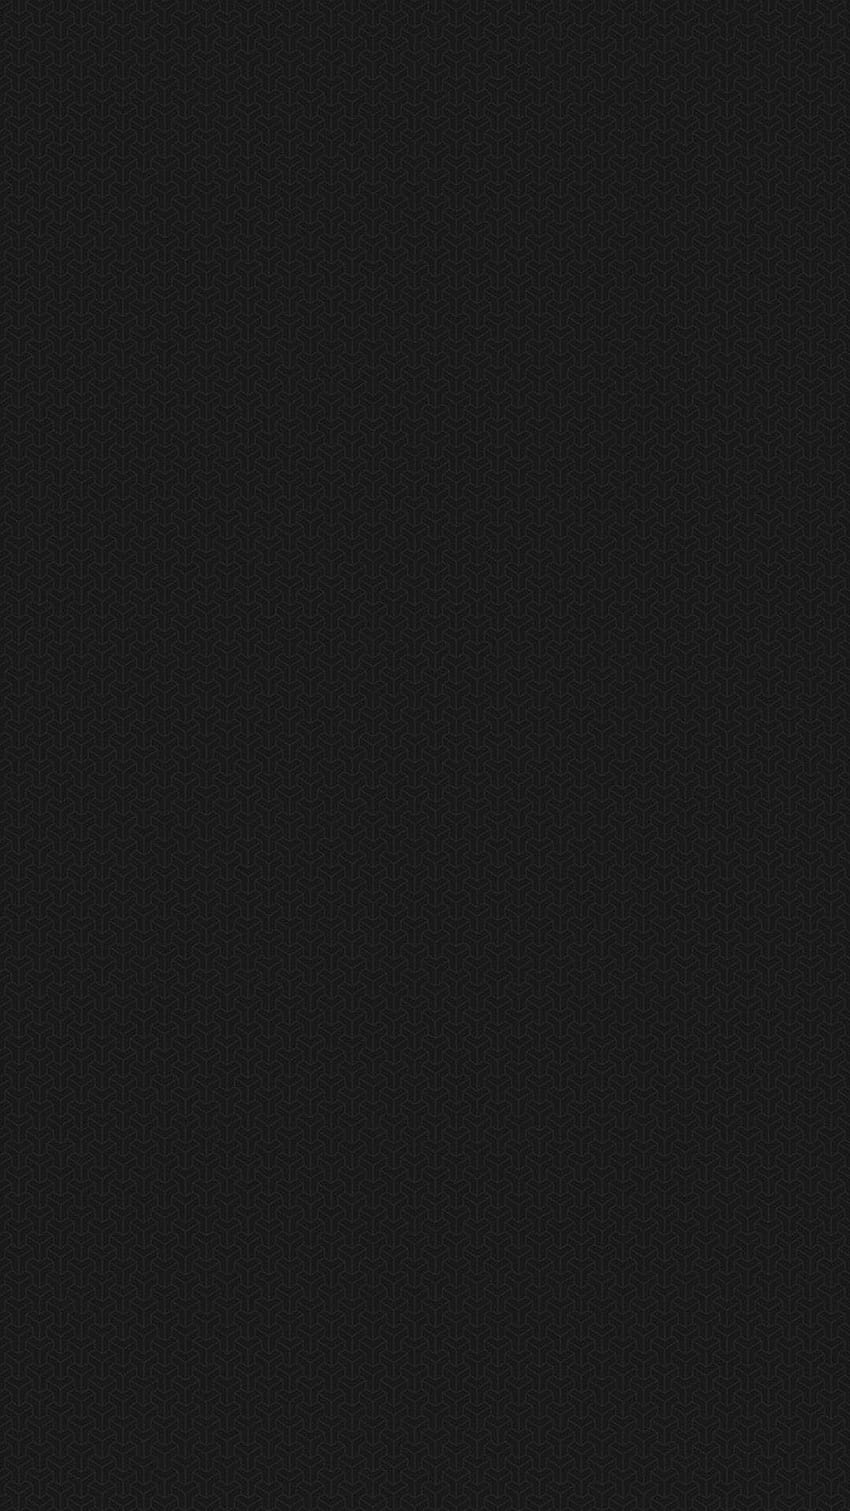 Black Texture Xperia, xperia black HD phone wallpaper | Pxfuel